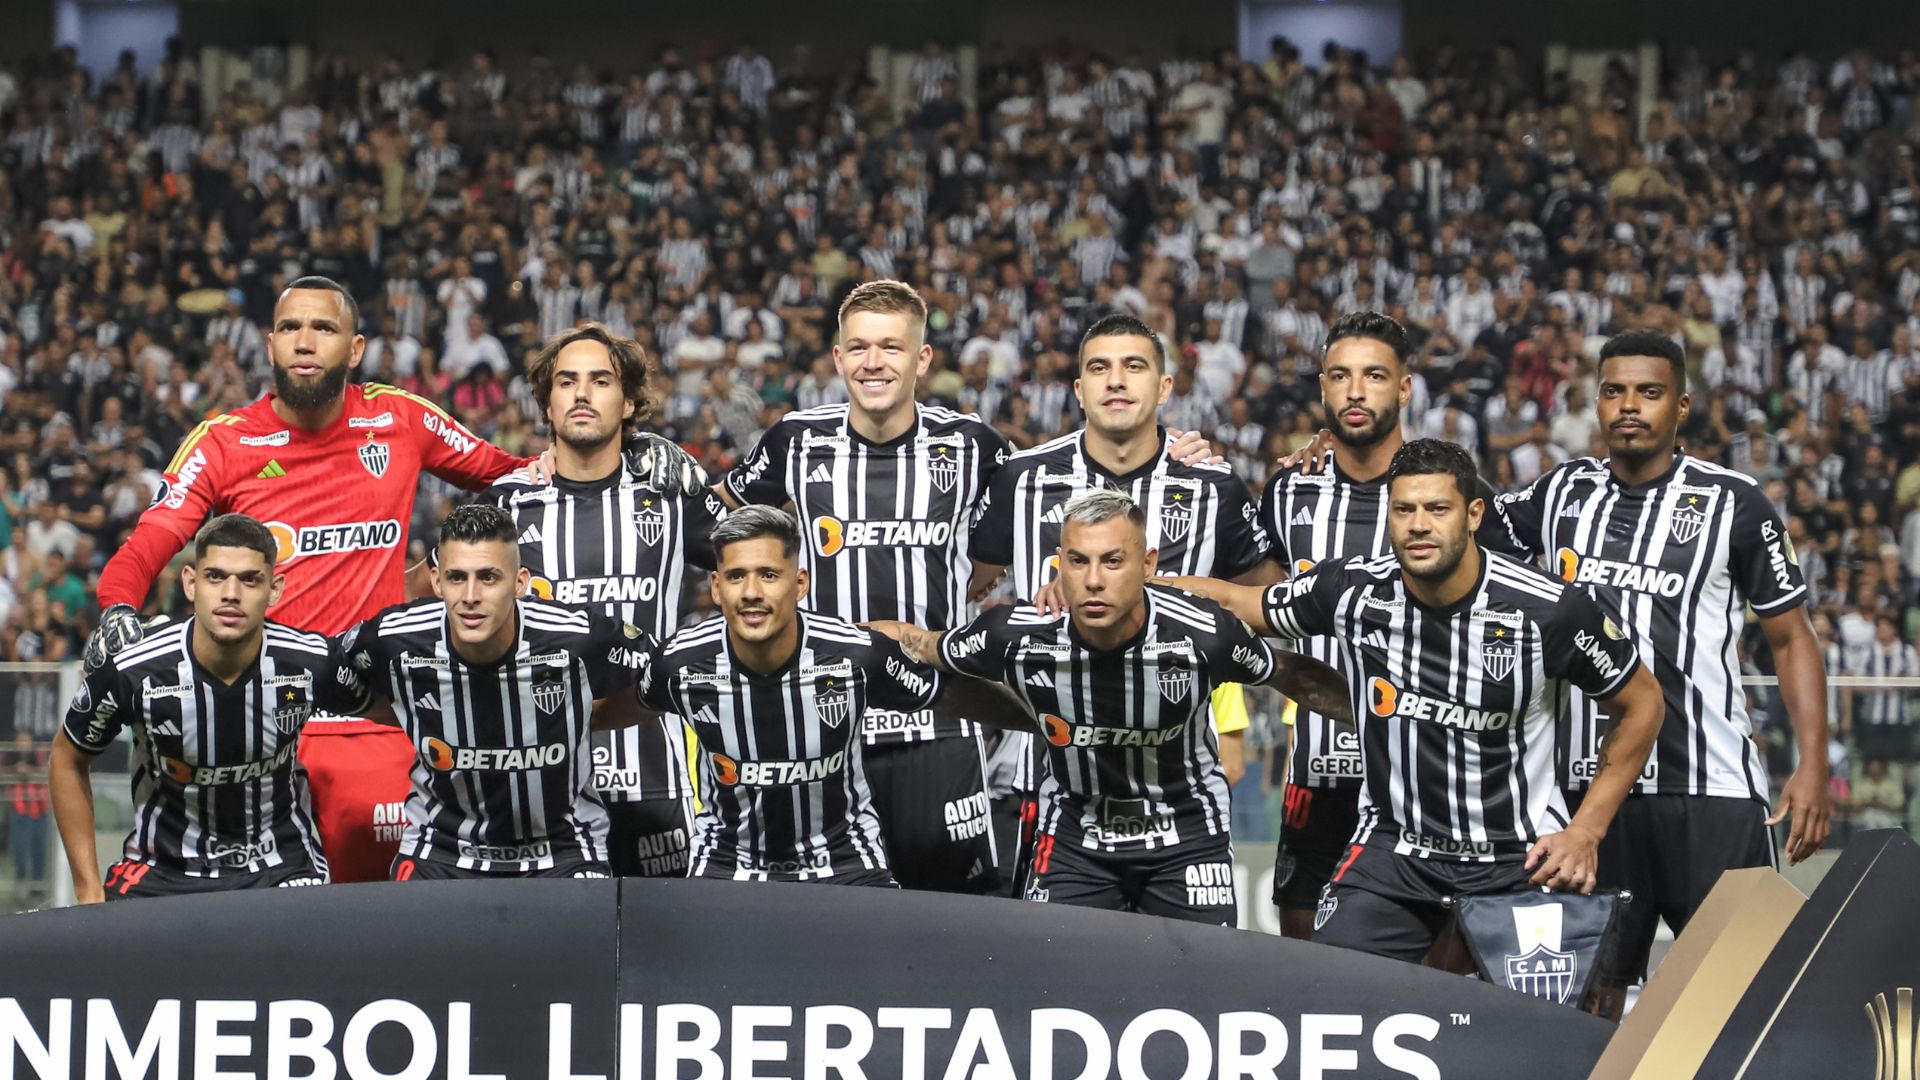 Elenco do Atlético-MG na Libertadores